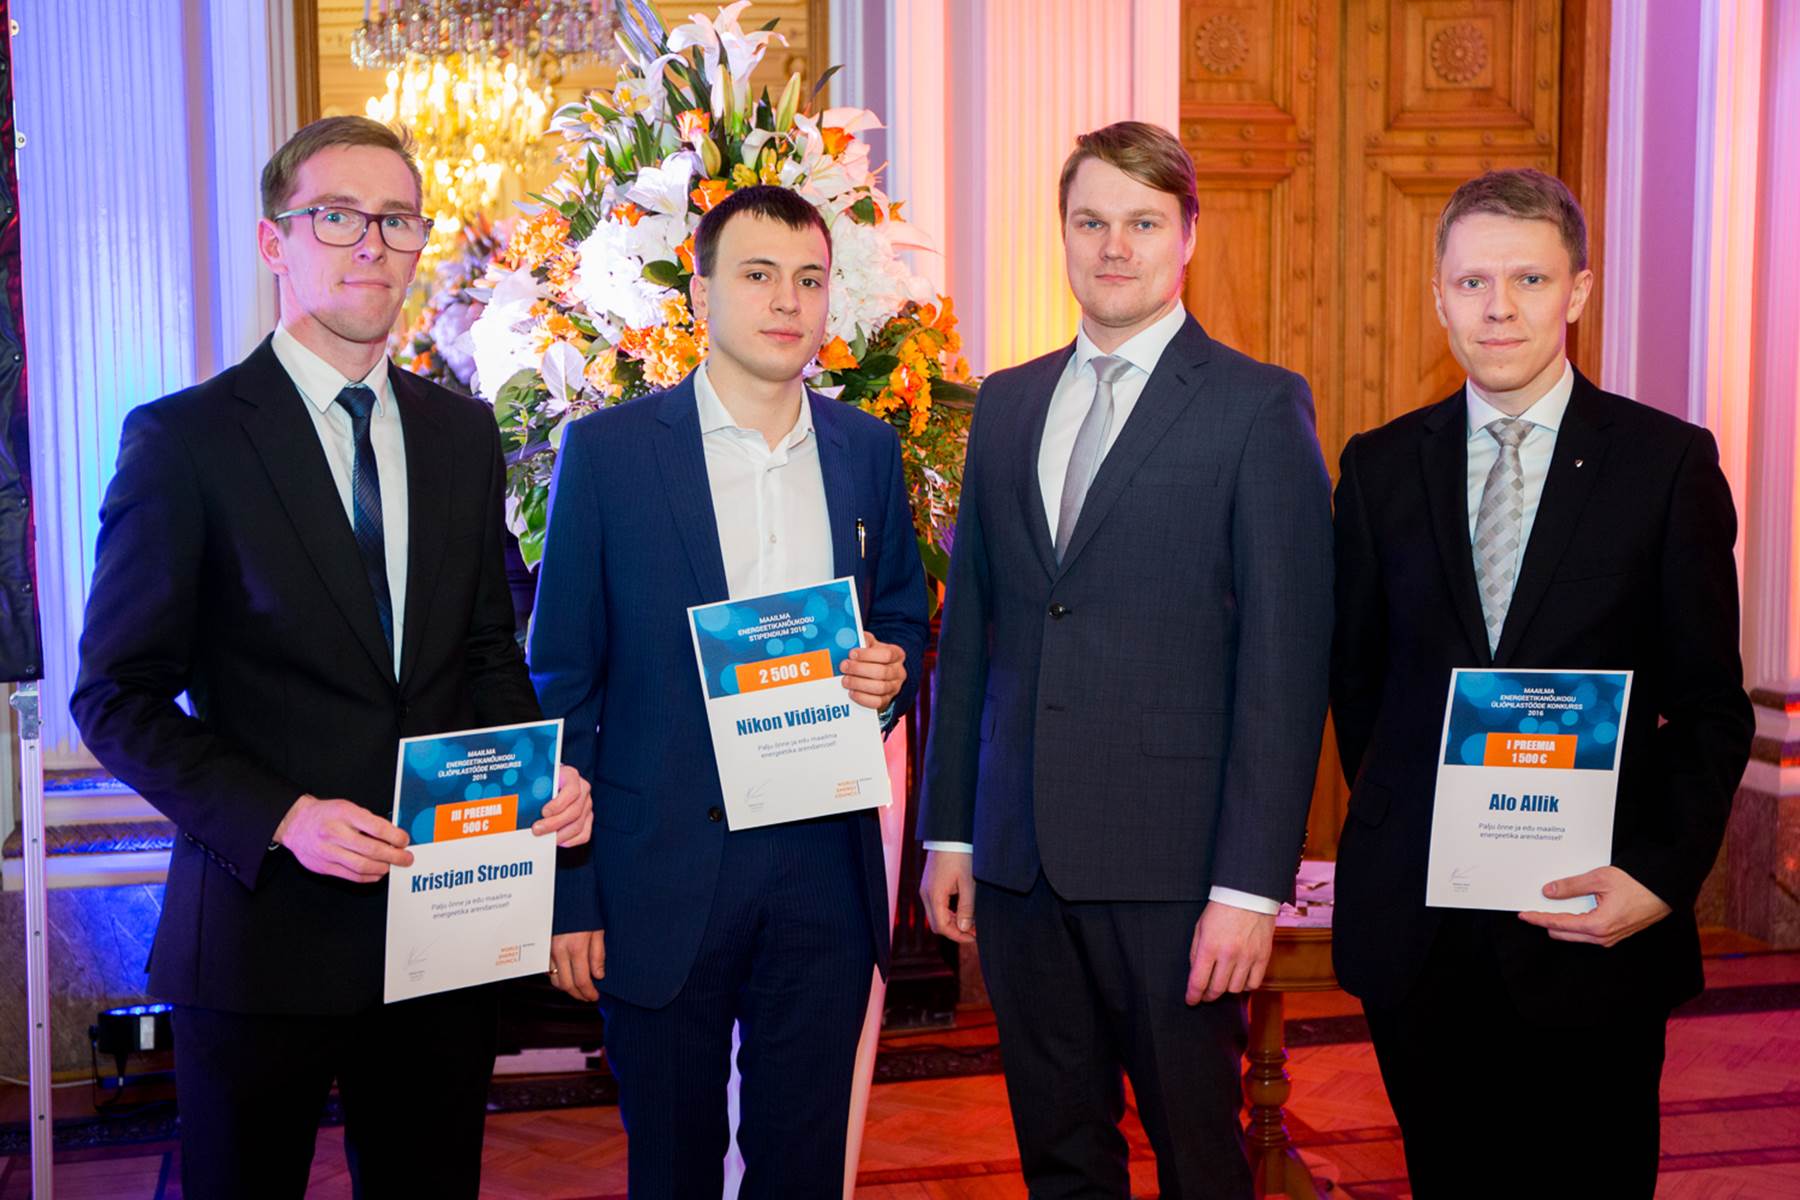 Palju õnne! Maailma Energeetikanõukogu 2500 eurose stipendiumi võitis Nikon Vidjajev